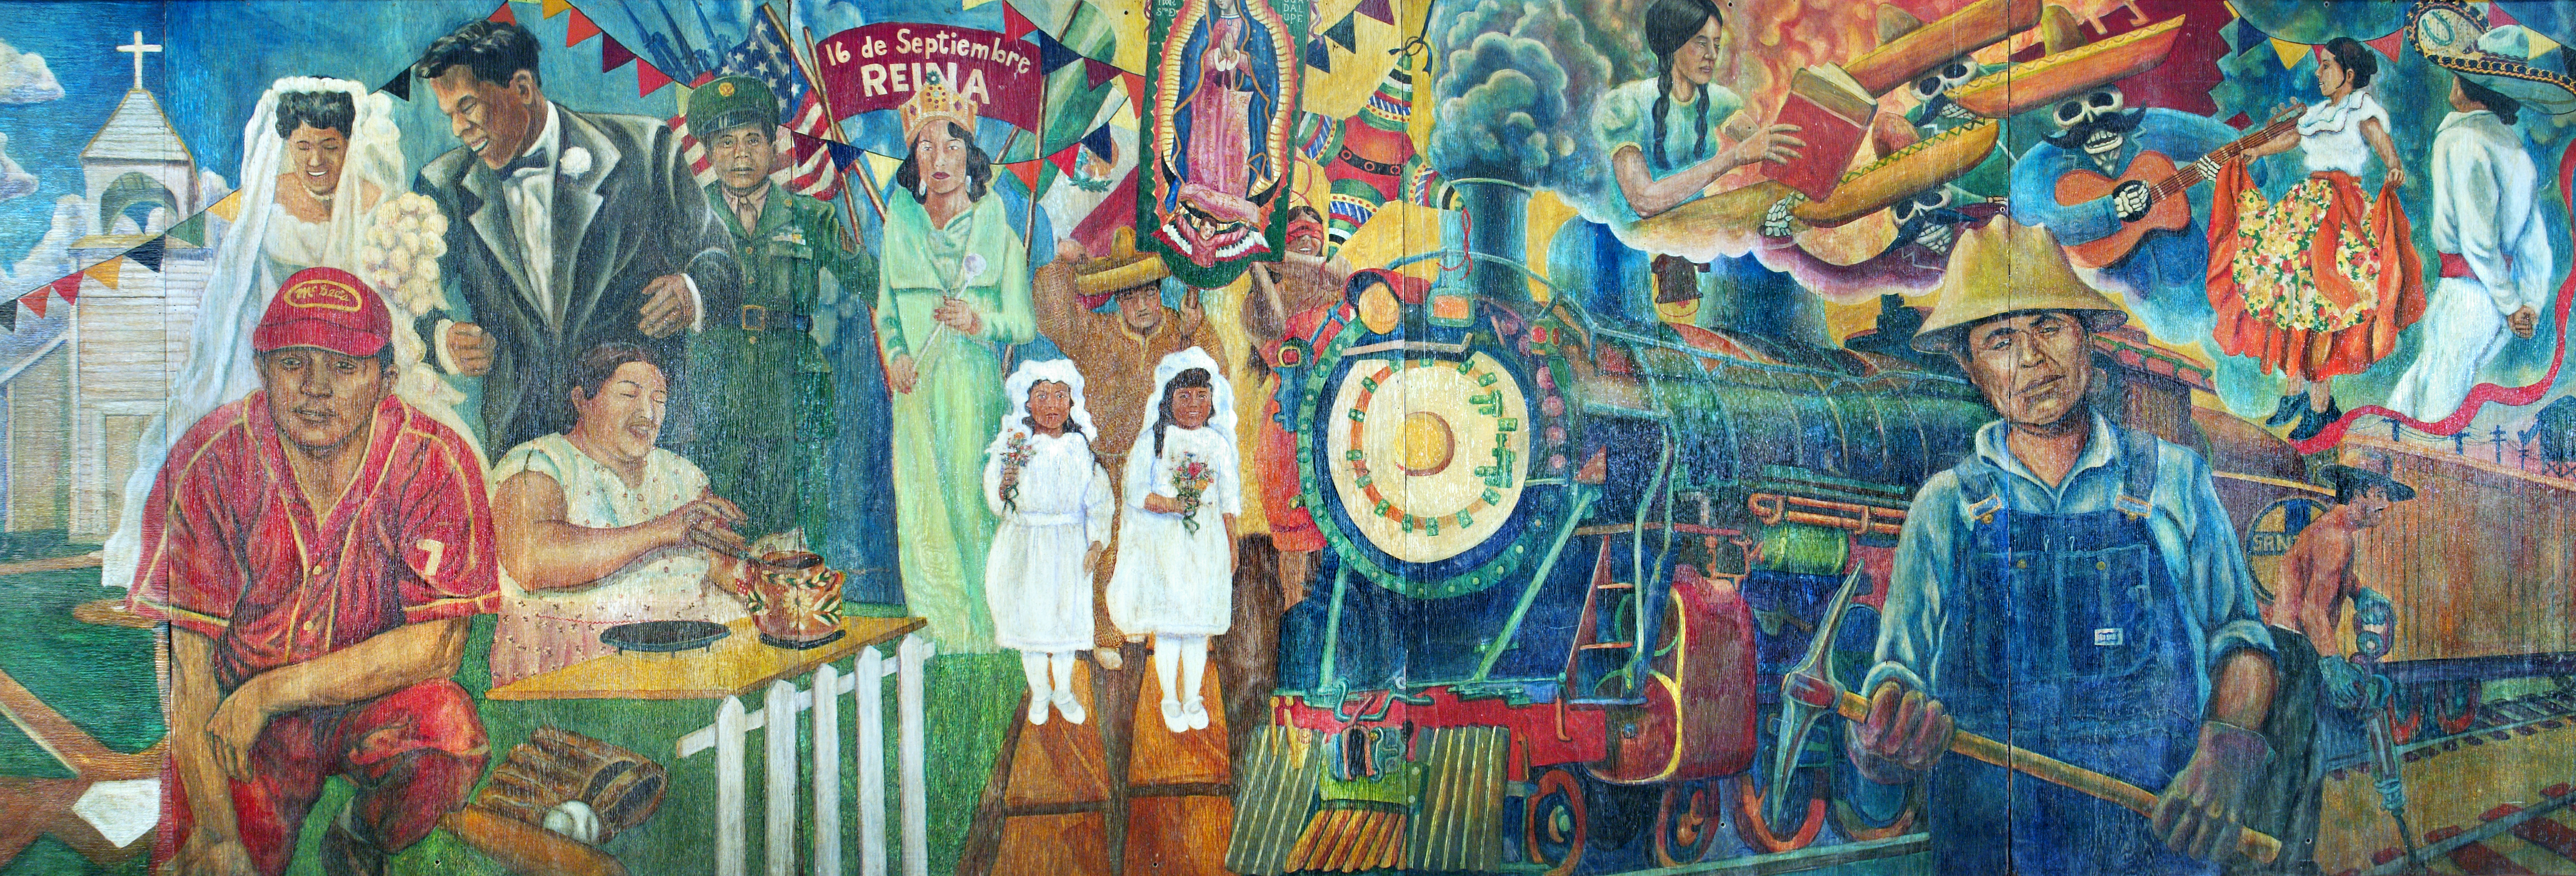 La Vida Buena, La Vida Mexicana mural